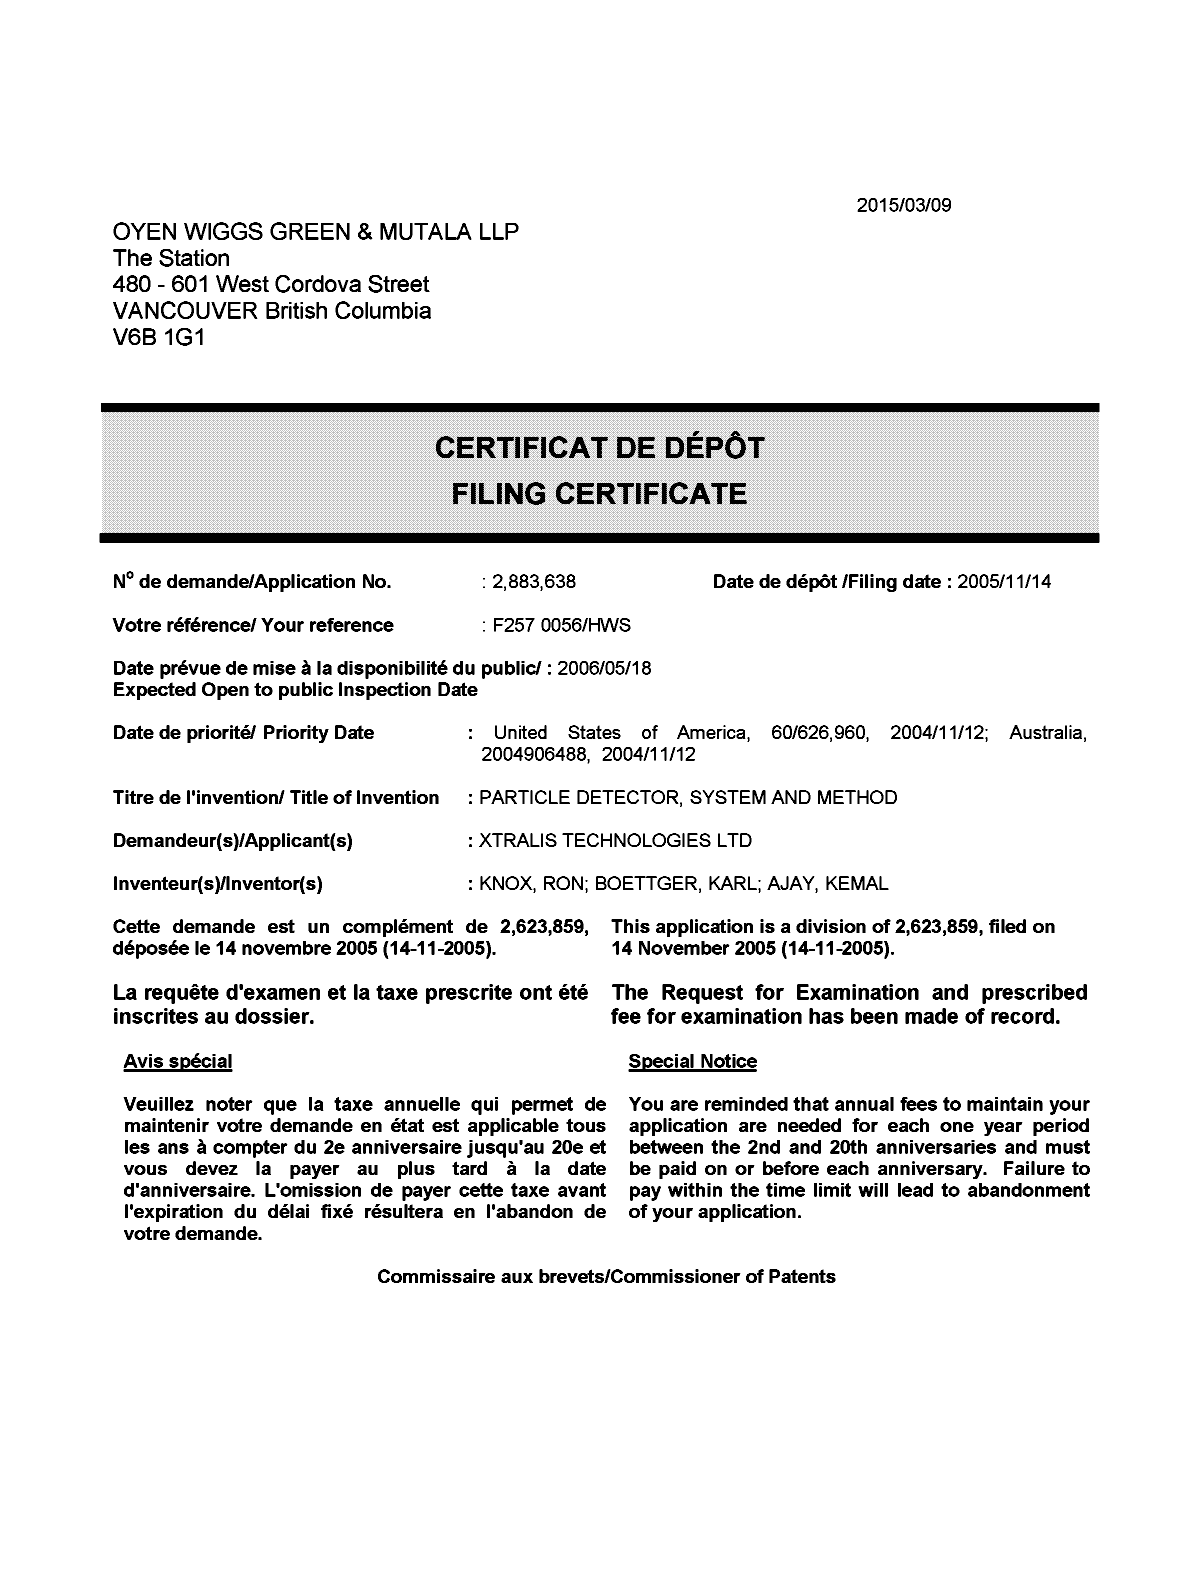 Document de brevet canadien 2883638. Correspondance 20150309. Image 1 de 1